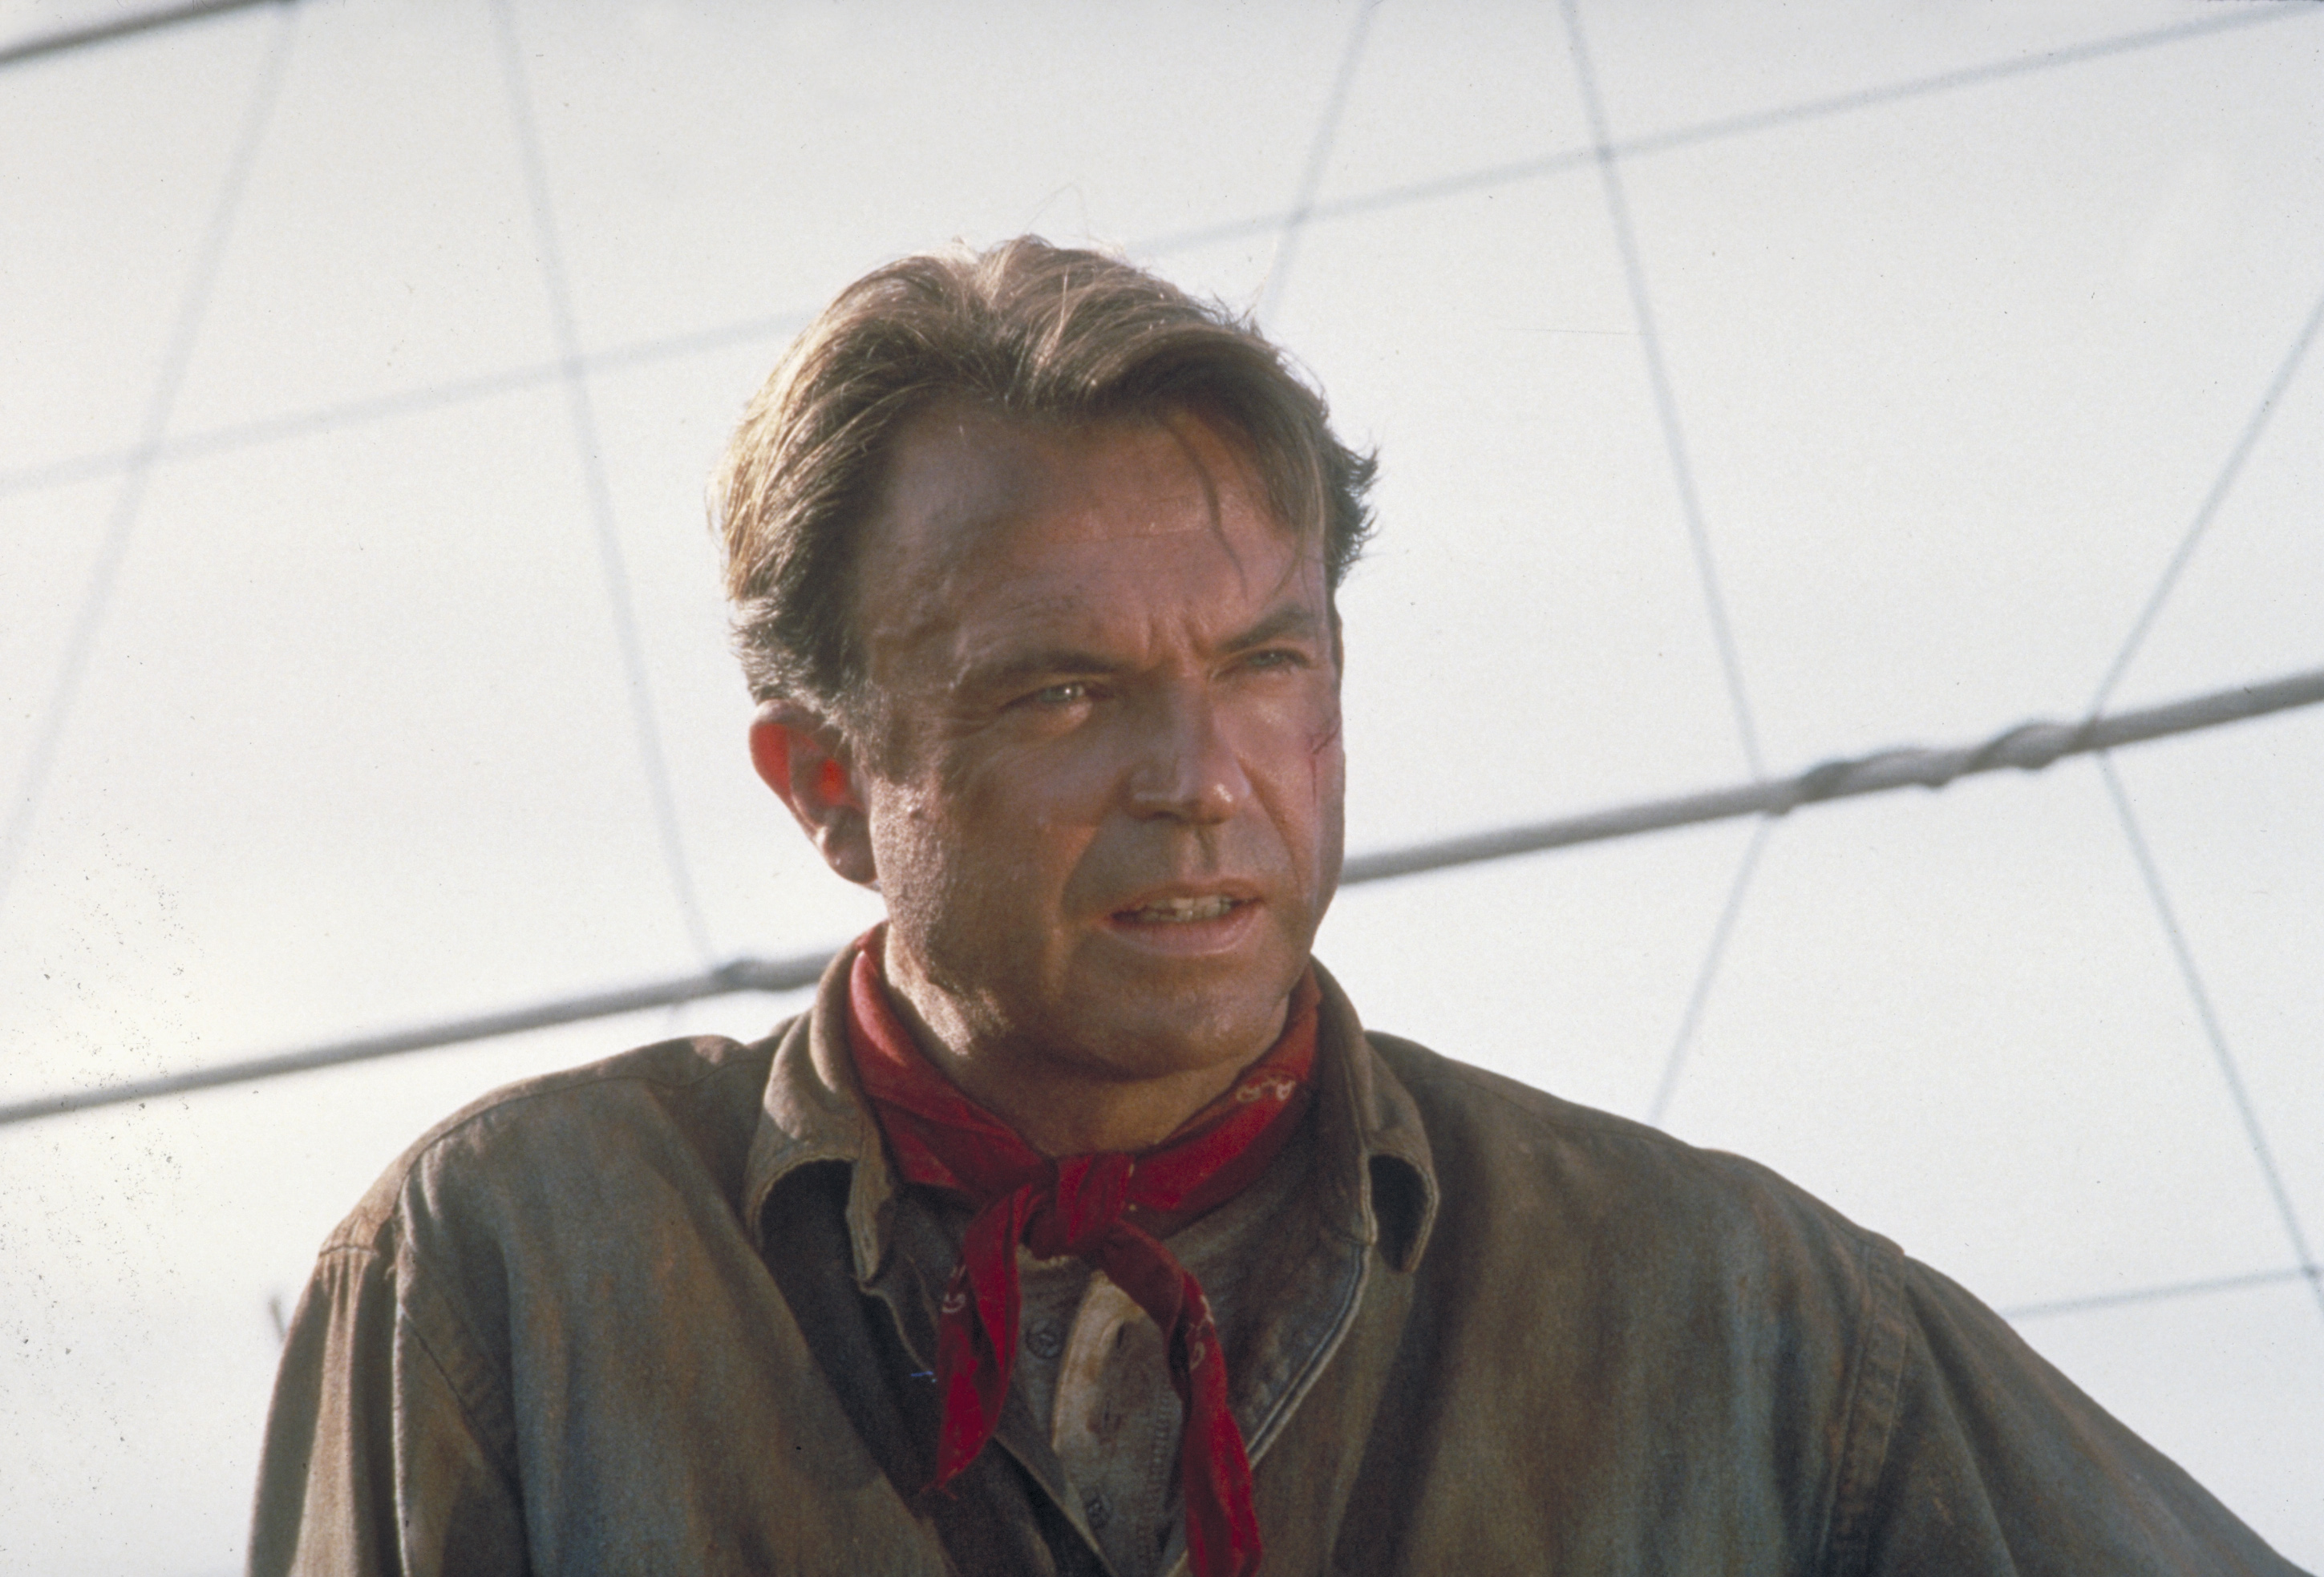 Sam Neil sur le plateau de tournage de "Jurassic Park", en 1993. | Source : Getty Images